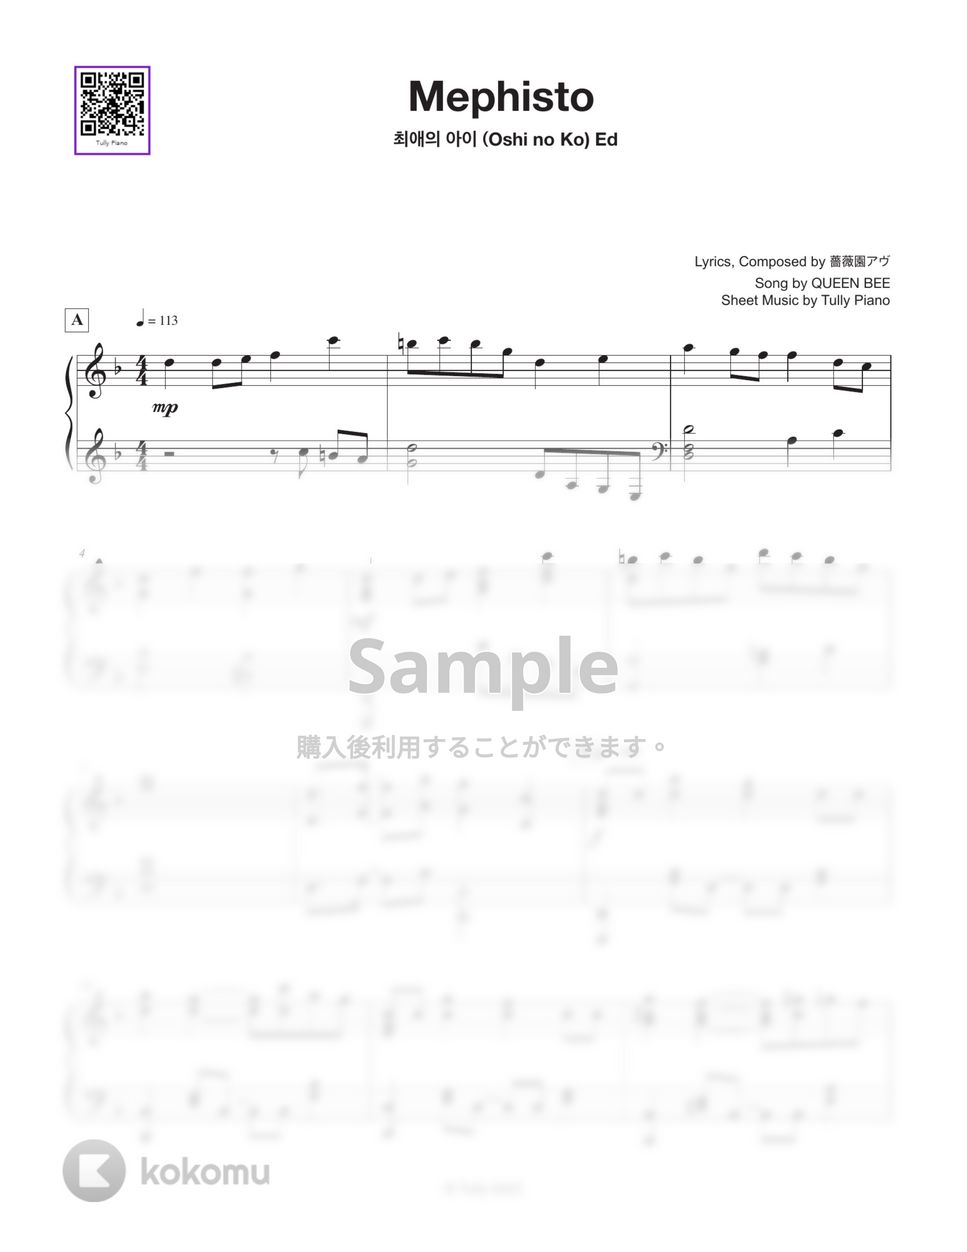 女王蜂 - メフィスト by Tully Piano